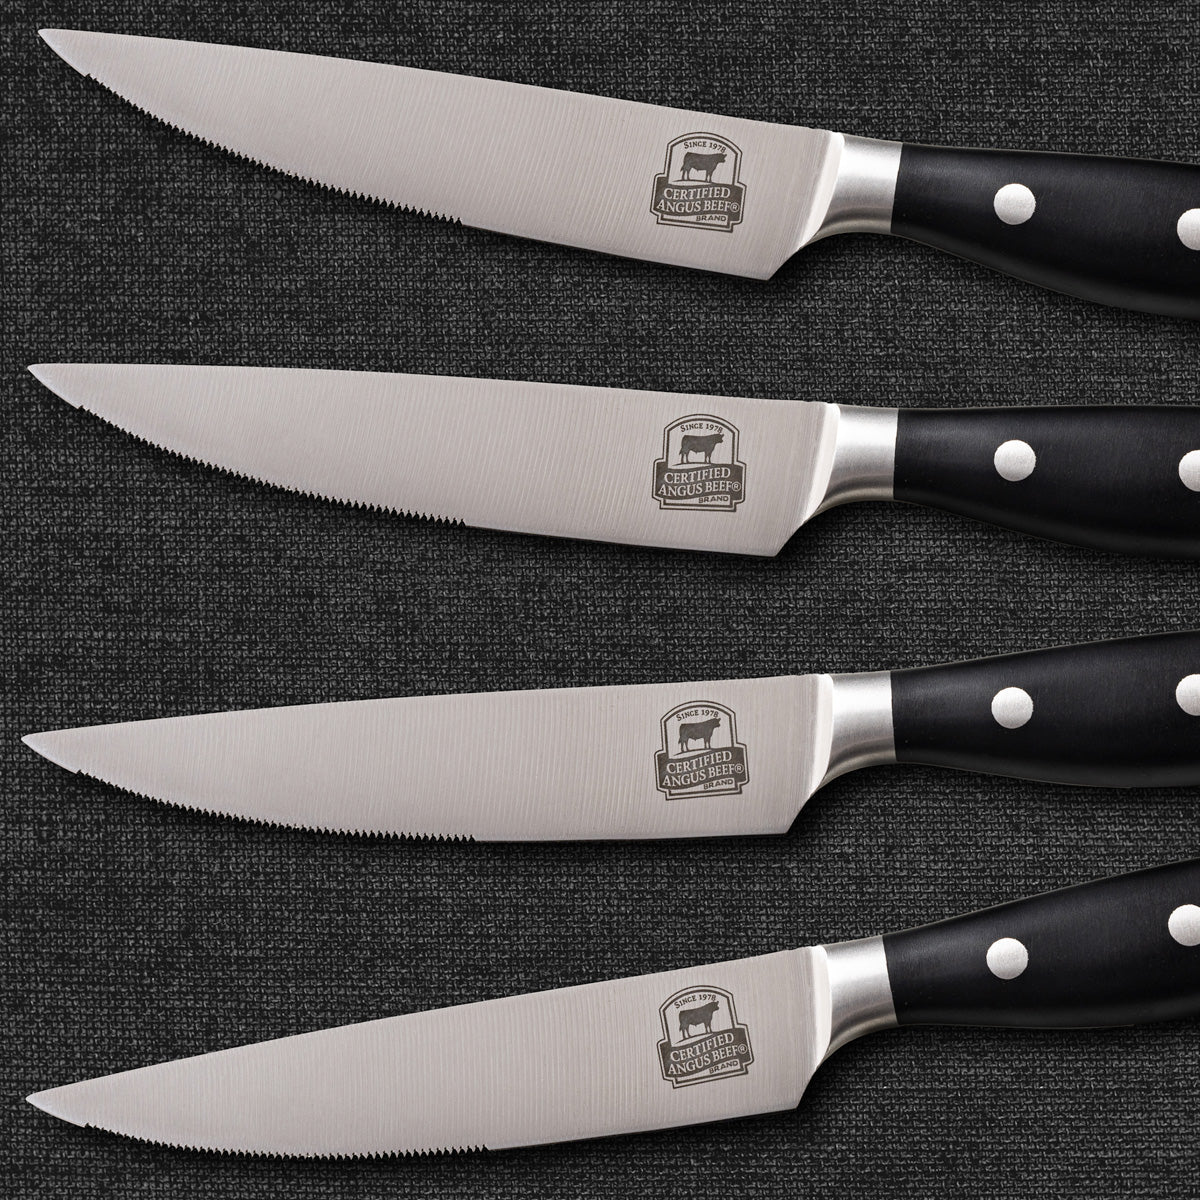 Chophouse Steak Knives - 8 pieces